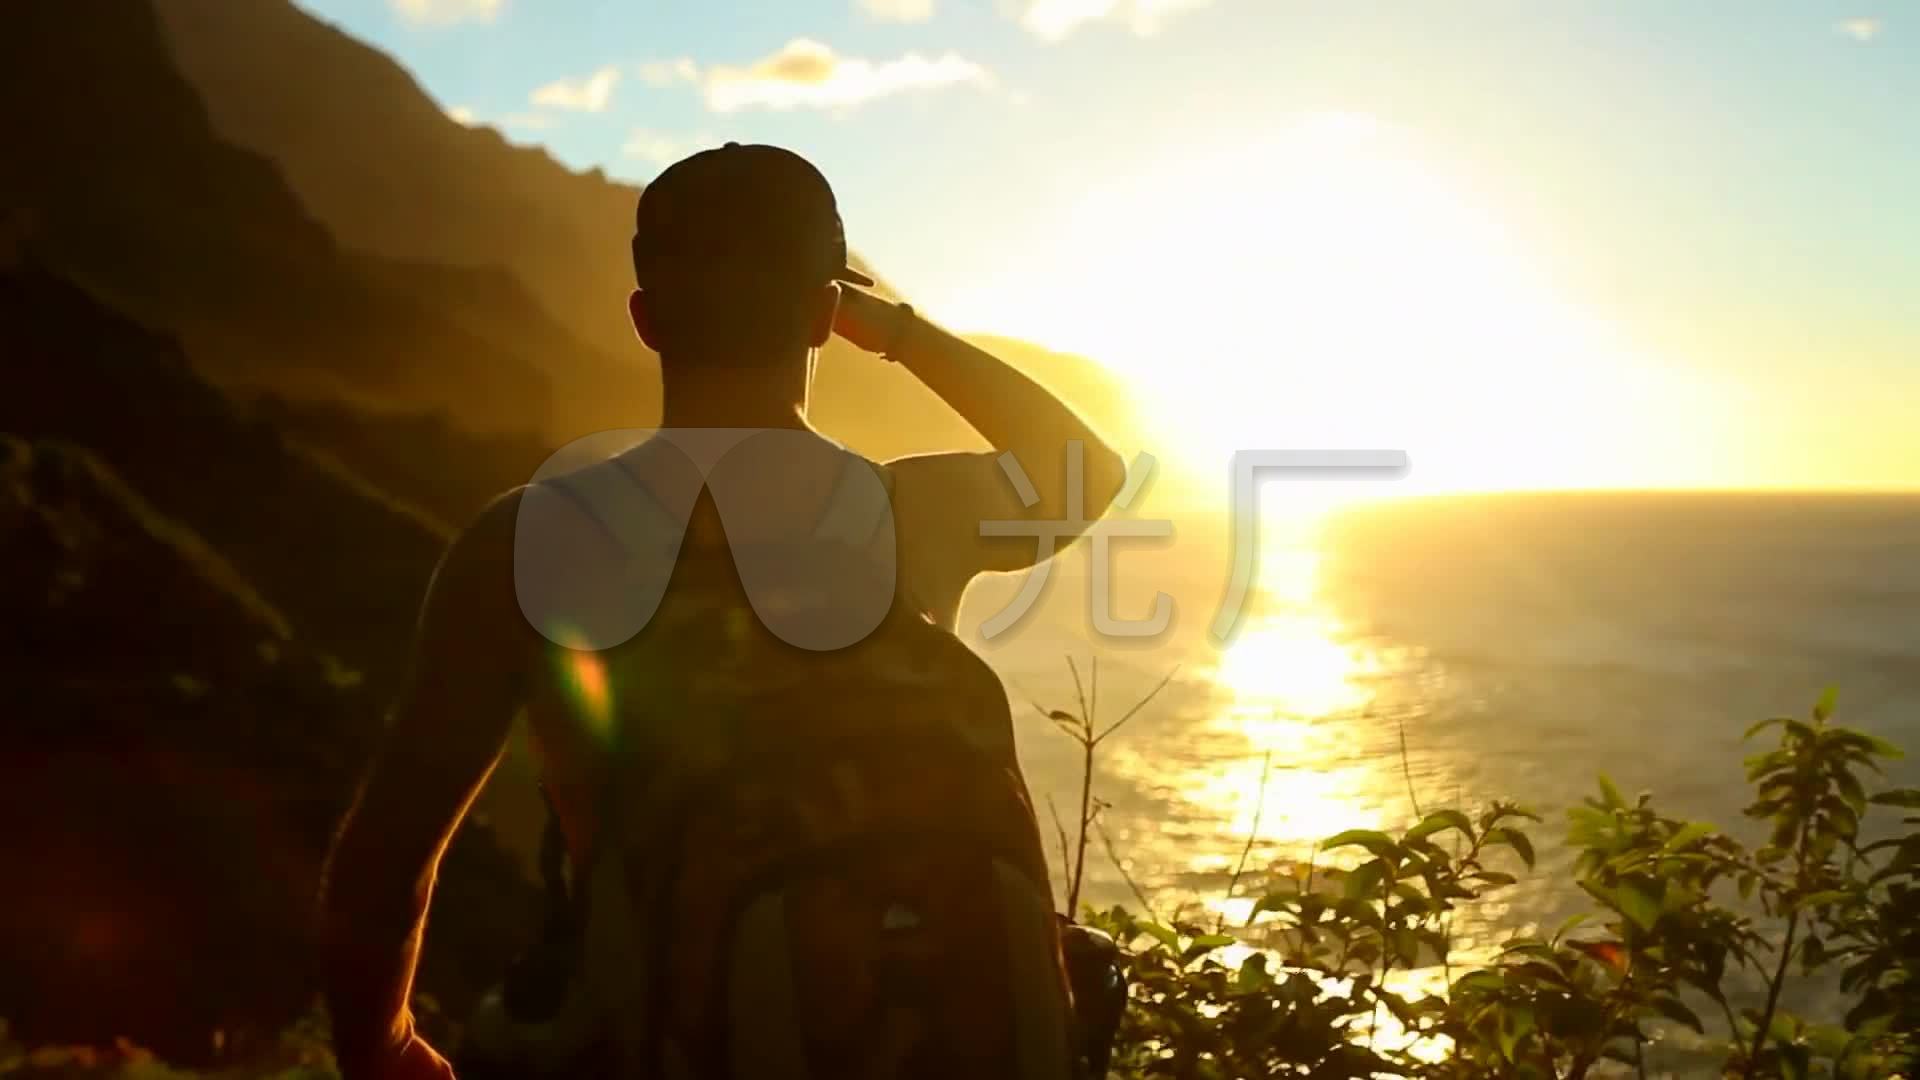 夏威夷考艾岛唯美自然风光背包客_1920x1080_高清视频